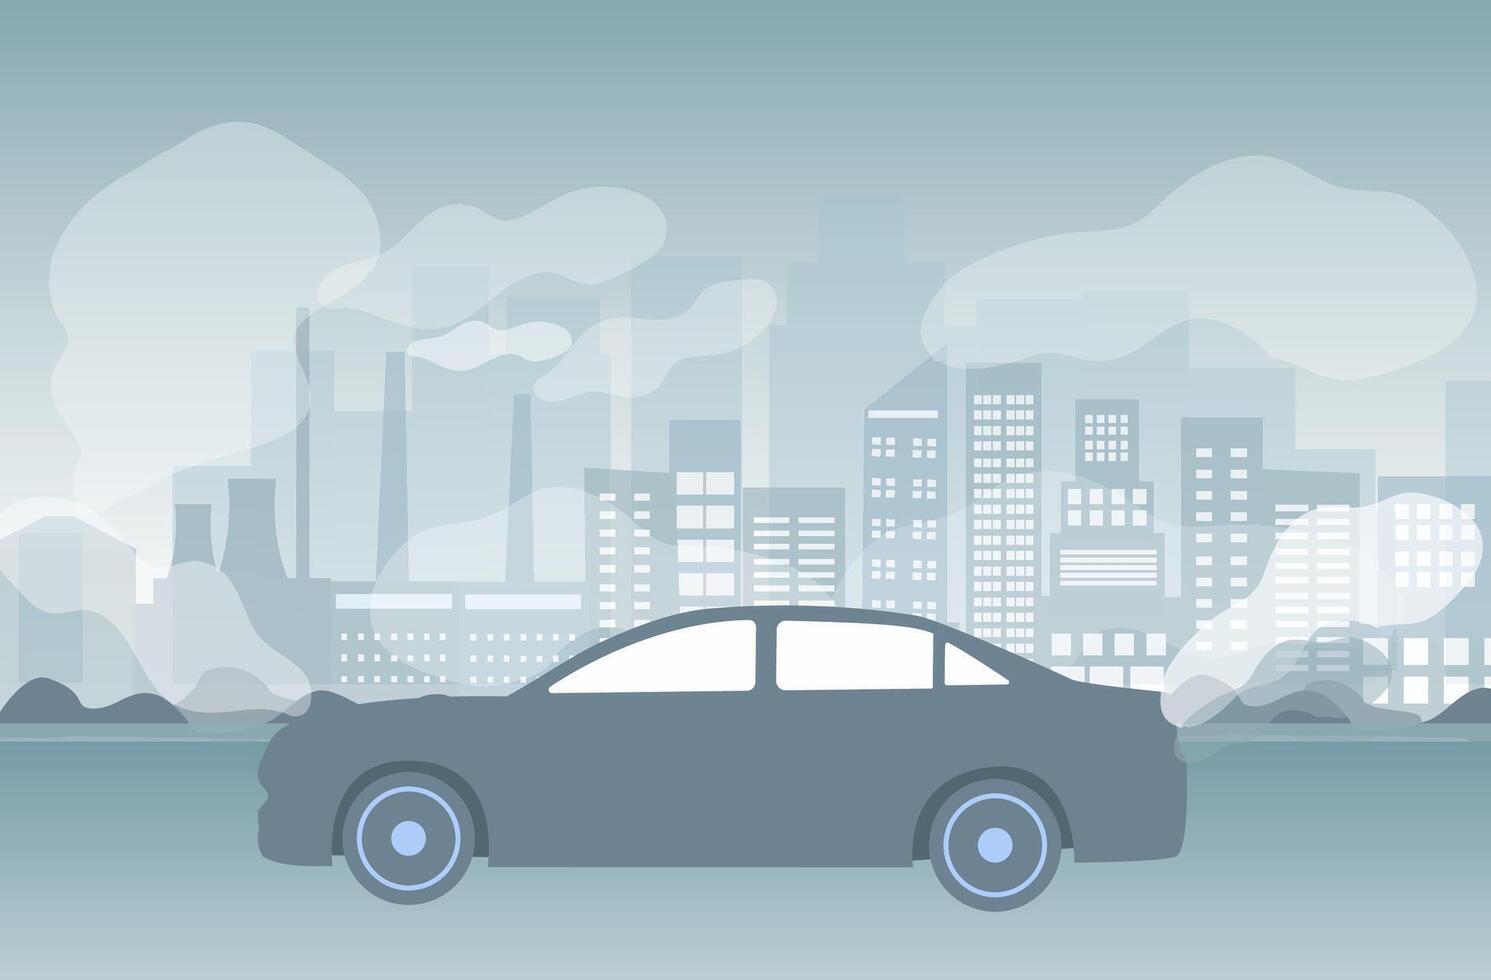 air pollution, pm 2.5, industrie pollution, toxique route fumée des nuages et environnement pollution, et véhicule carbone dioxyde vecteur illustration.